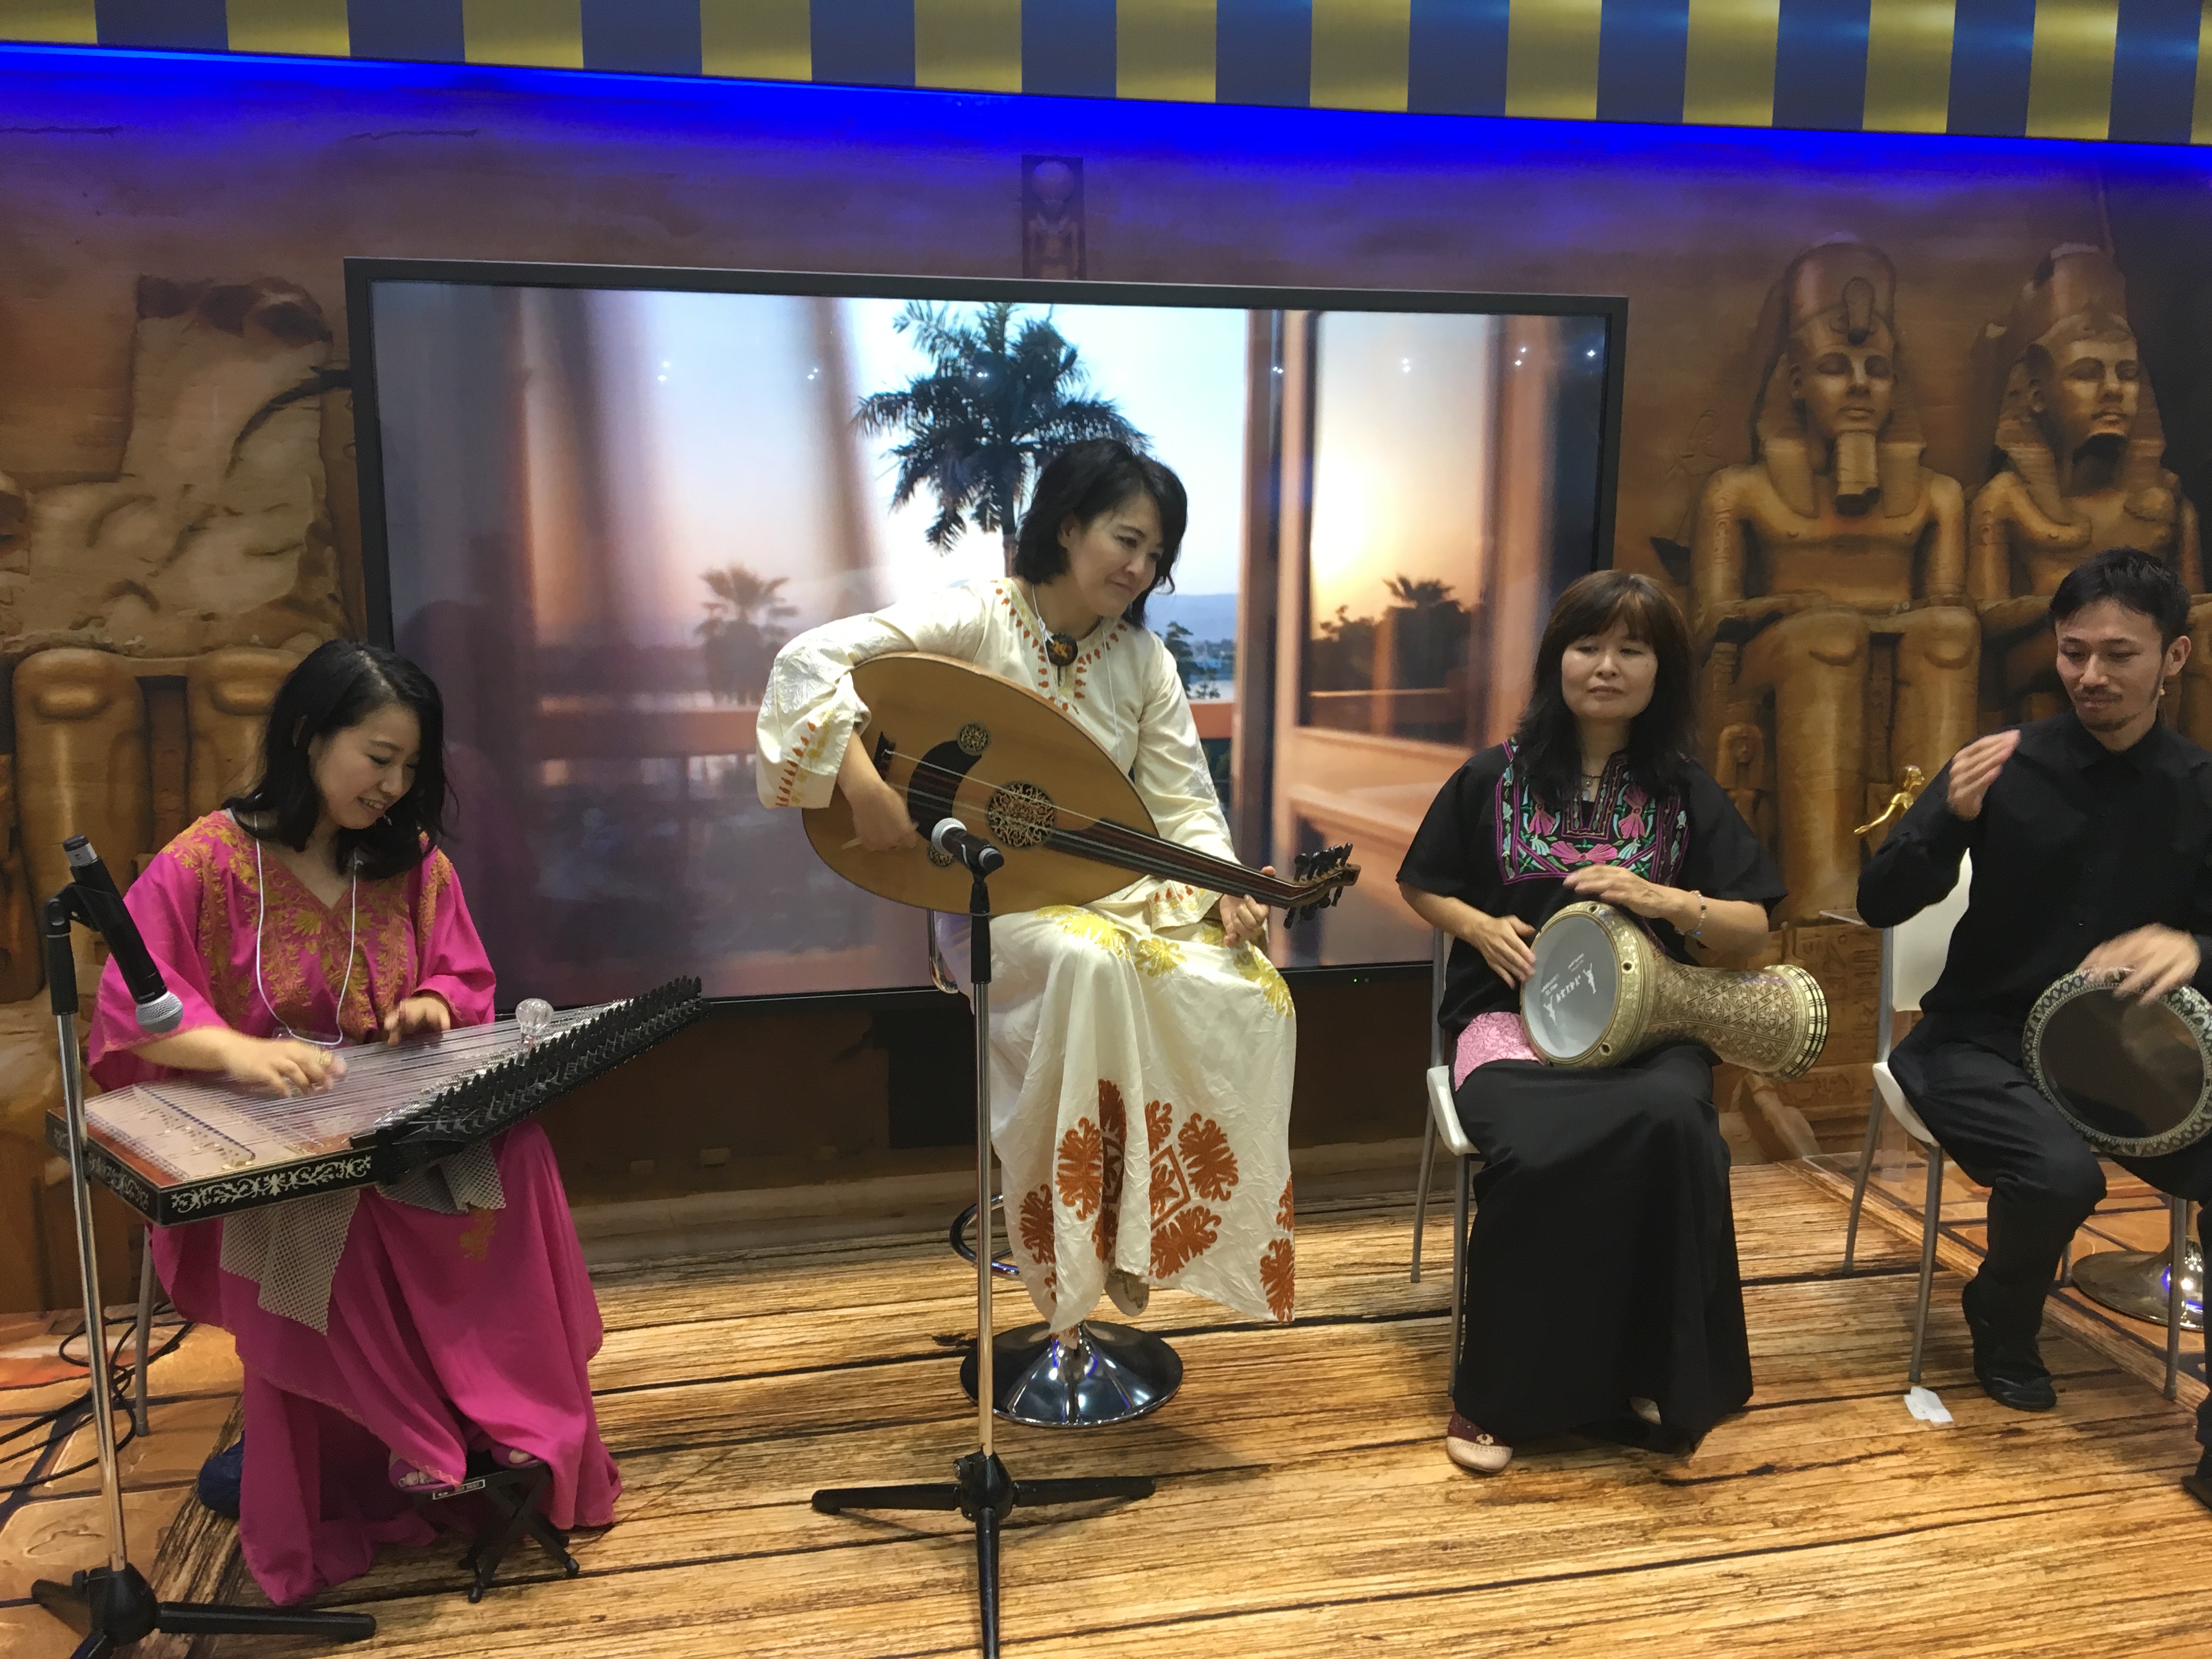 Spectacle de musique orientale lors du salon du voyage au Japon